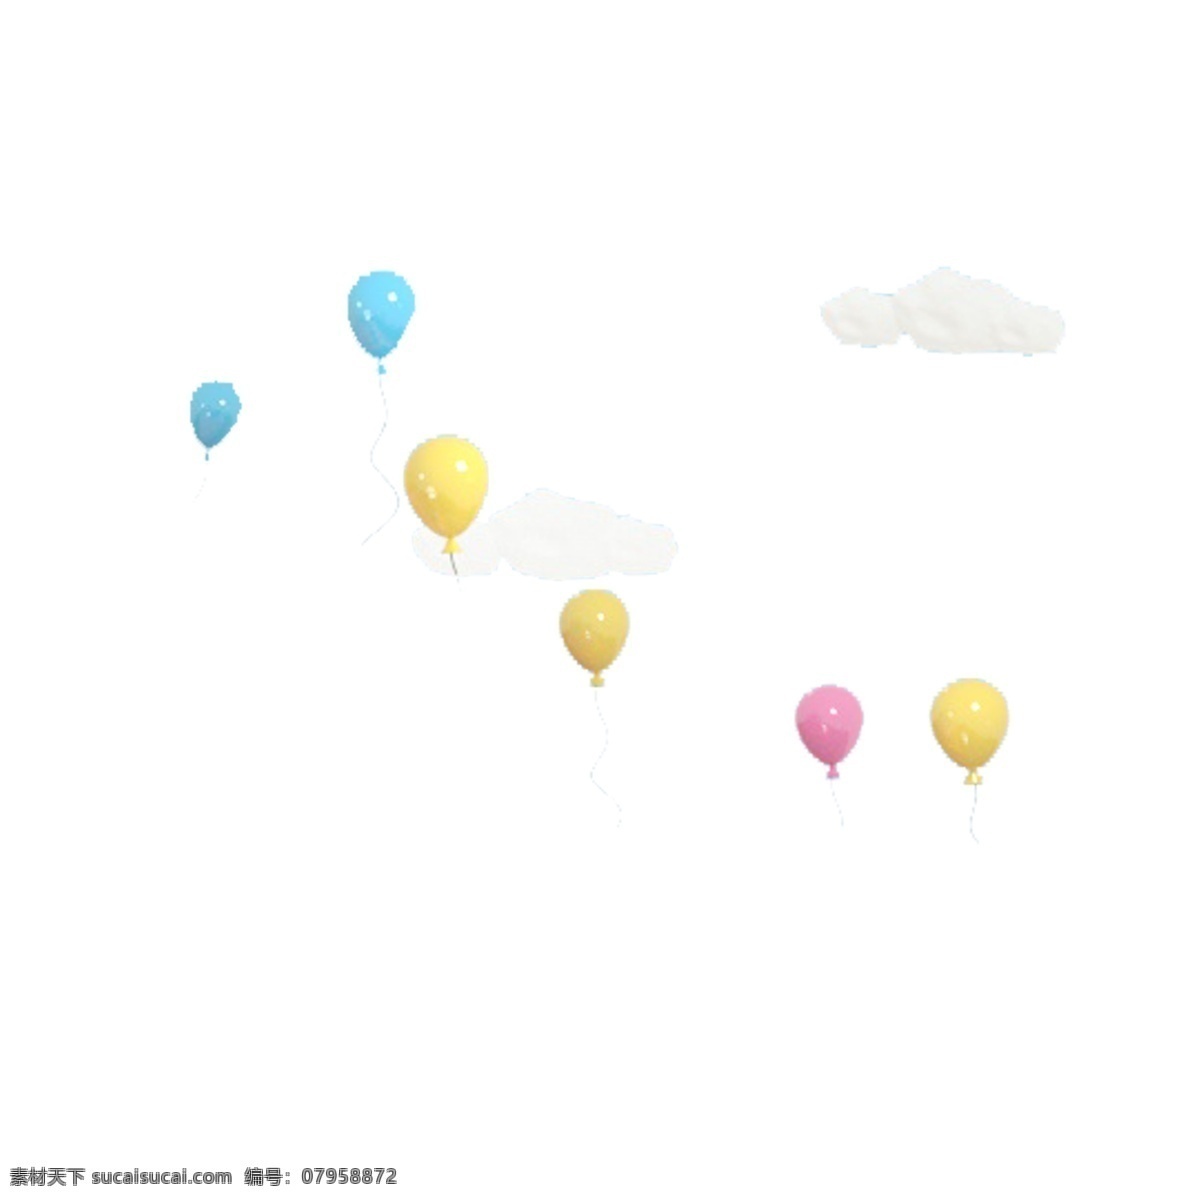 彩色 光泽 气球 元素 圆润 纹理 装饰 白色 云朵 漂浮 质感 浪漫 卡通插画 可爱 高光 悬挂